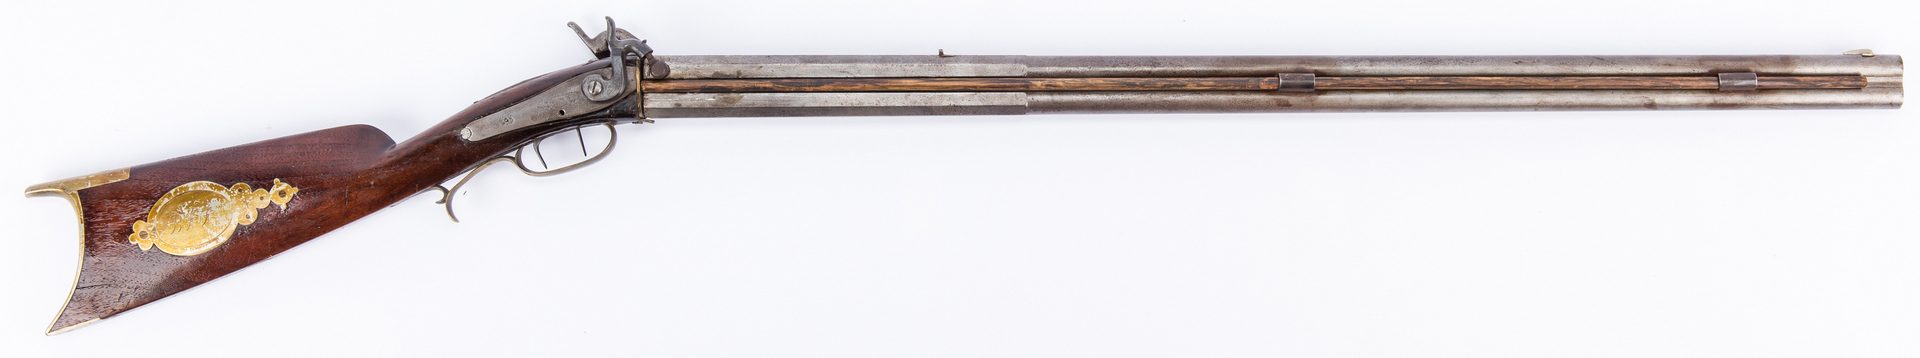 Lot 375: Inlaid O/U rifle plus TN Bayonet